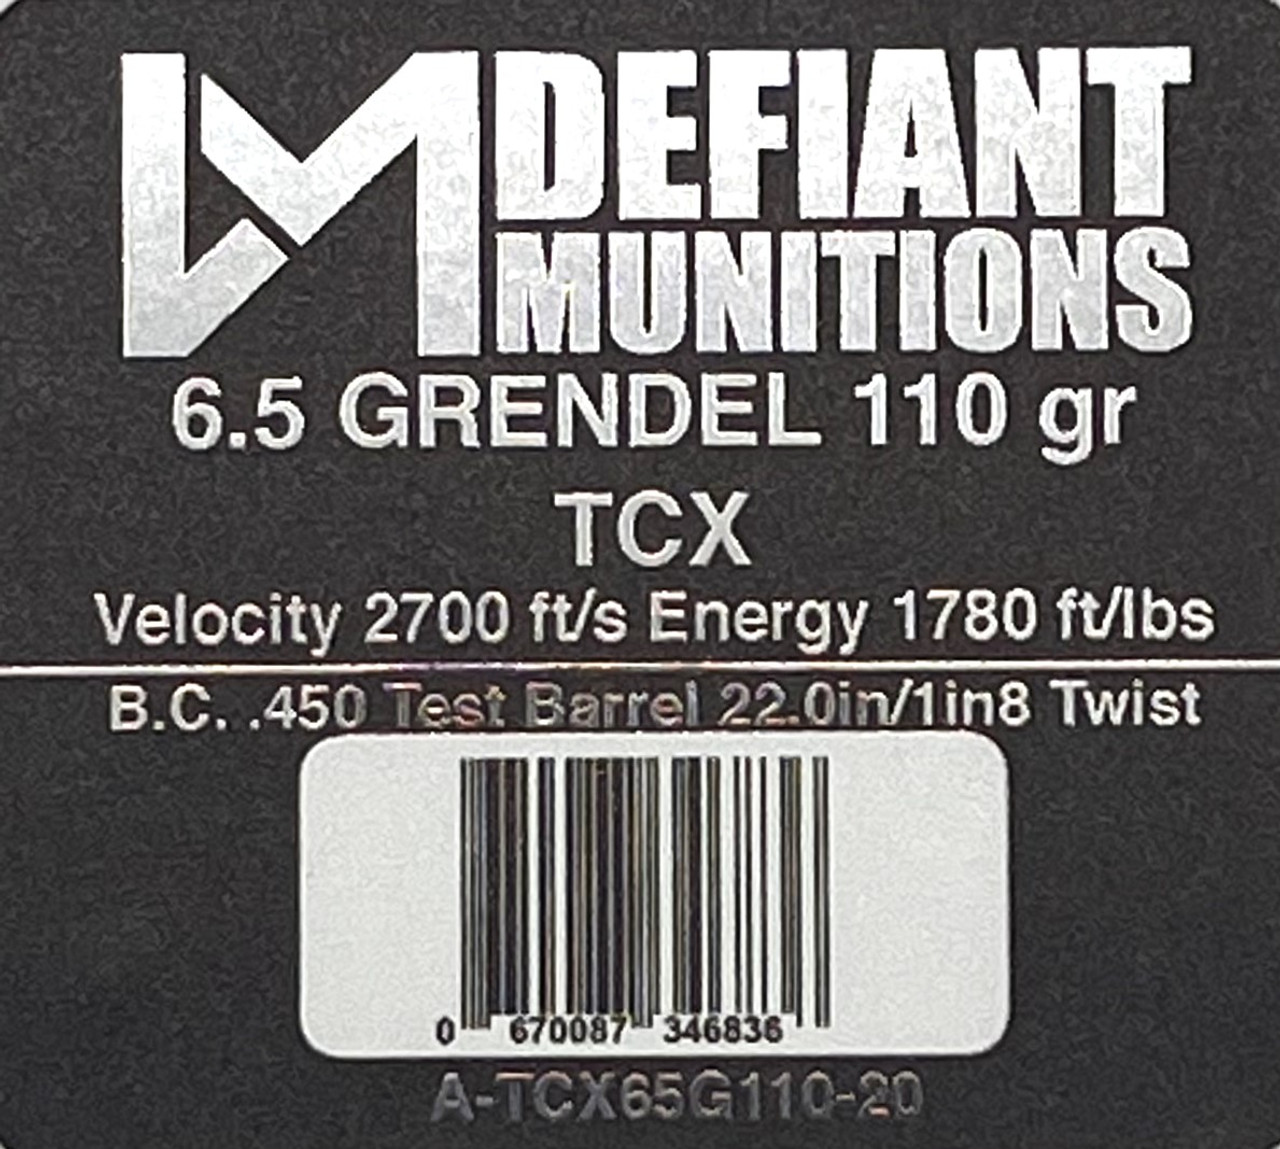  6.5 GRENDEL 110gr TCX  Solid Copper Defensive Ammunition